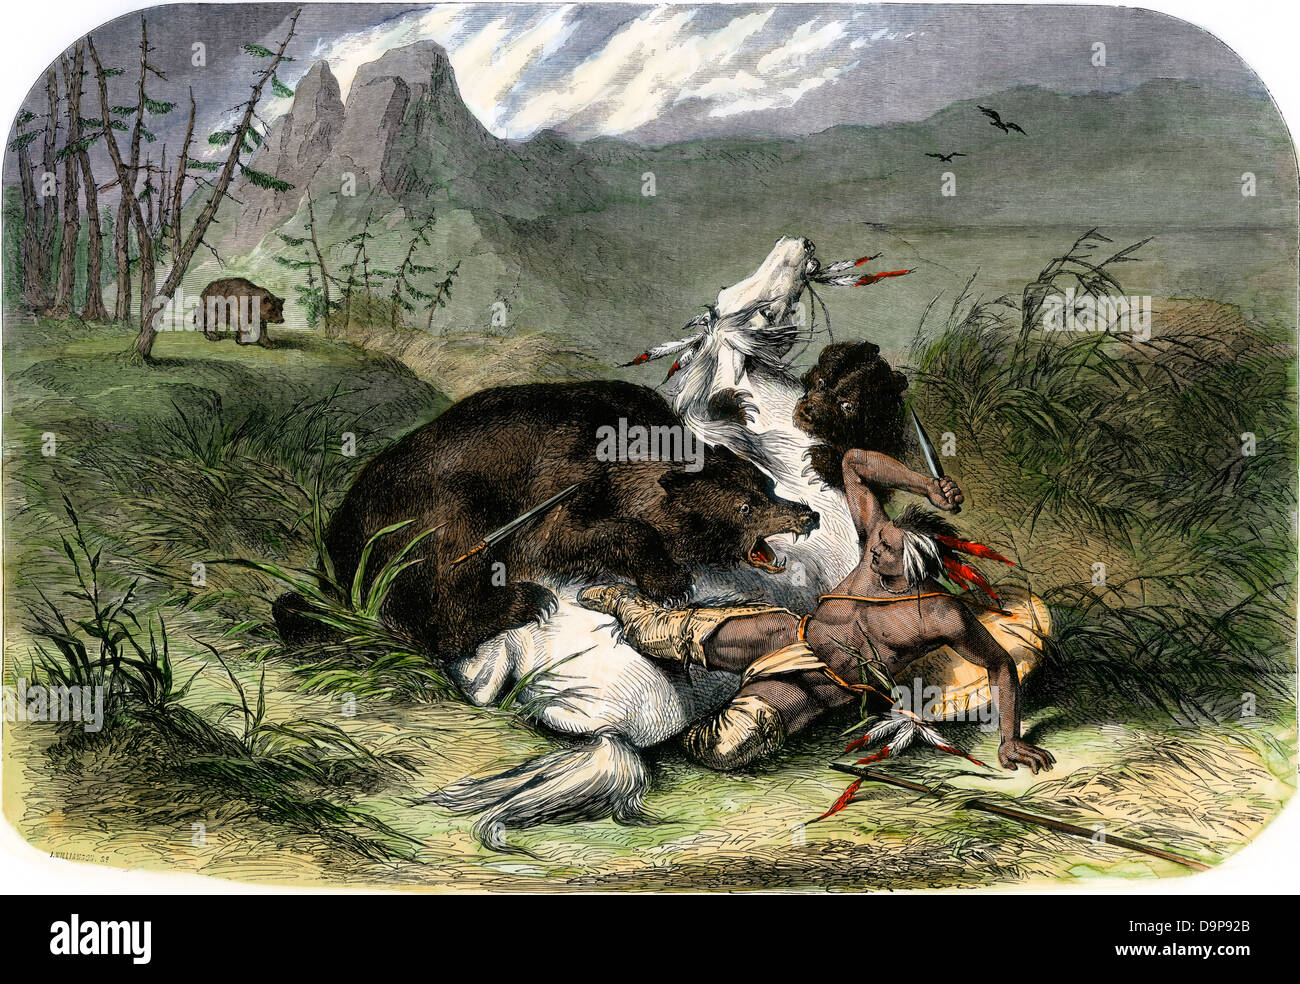 Pawnee indiano e il suo cavallo attaccato da orsi grizzly, 1800s. Colorate a mano la xilografia Foto Stock